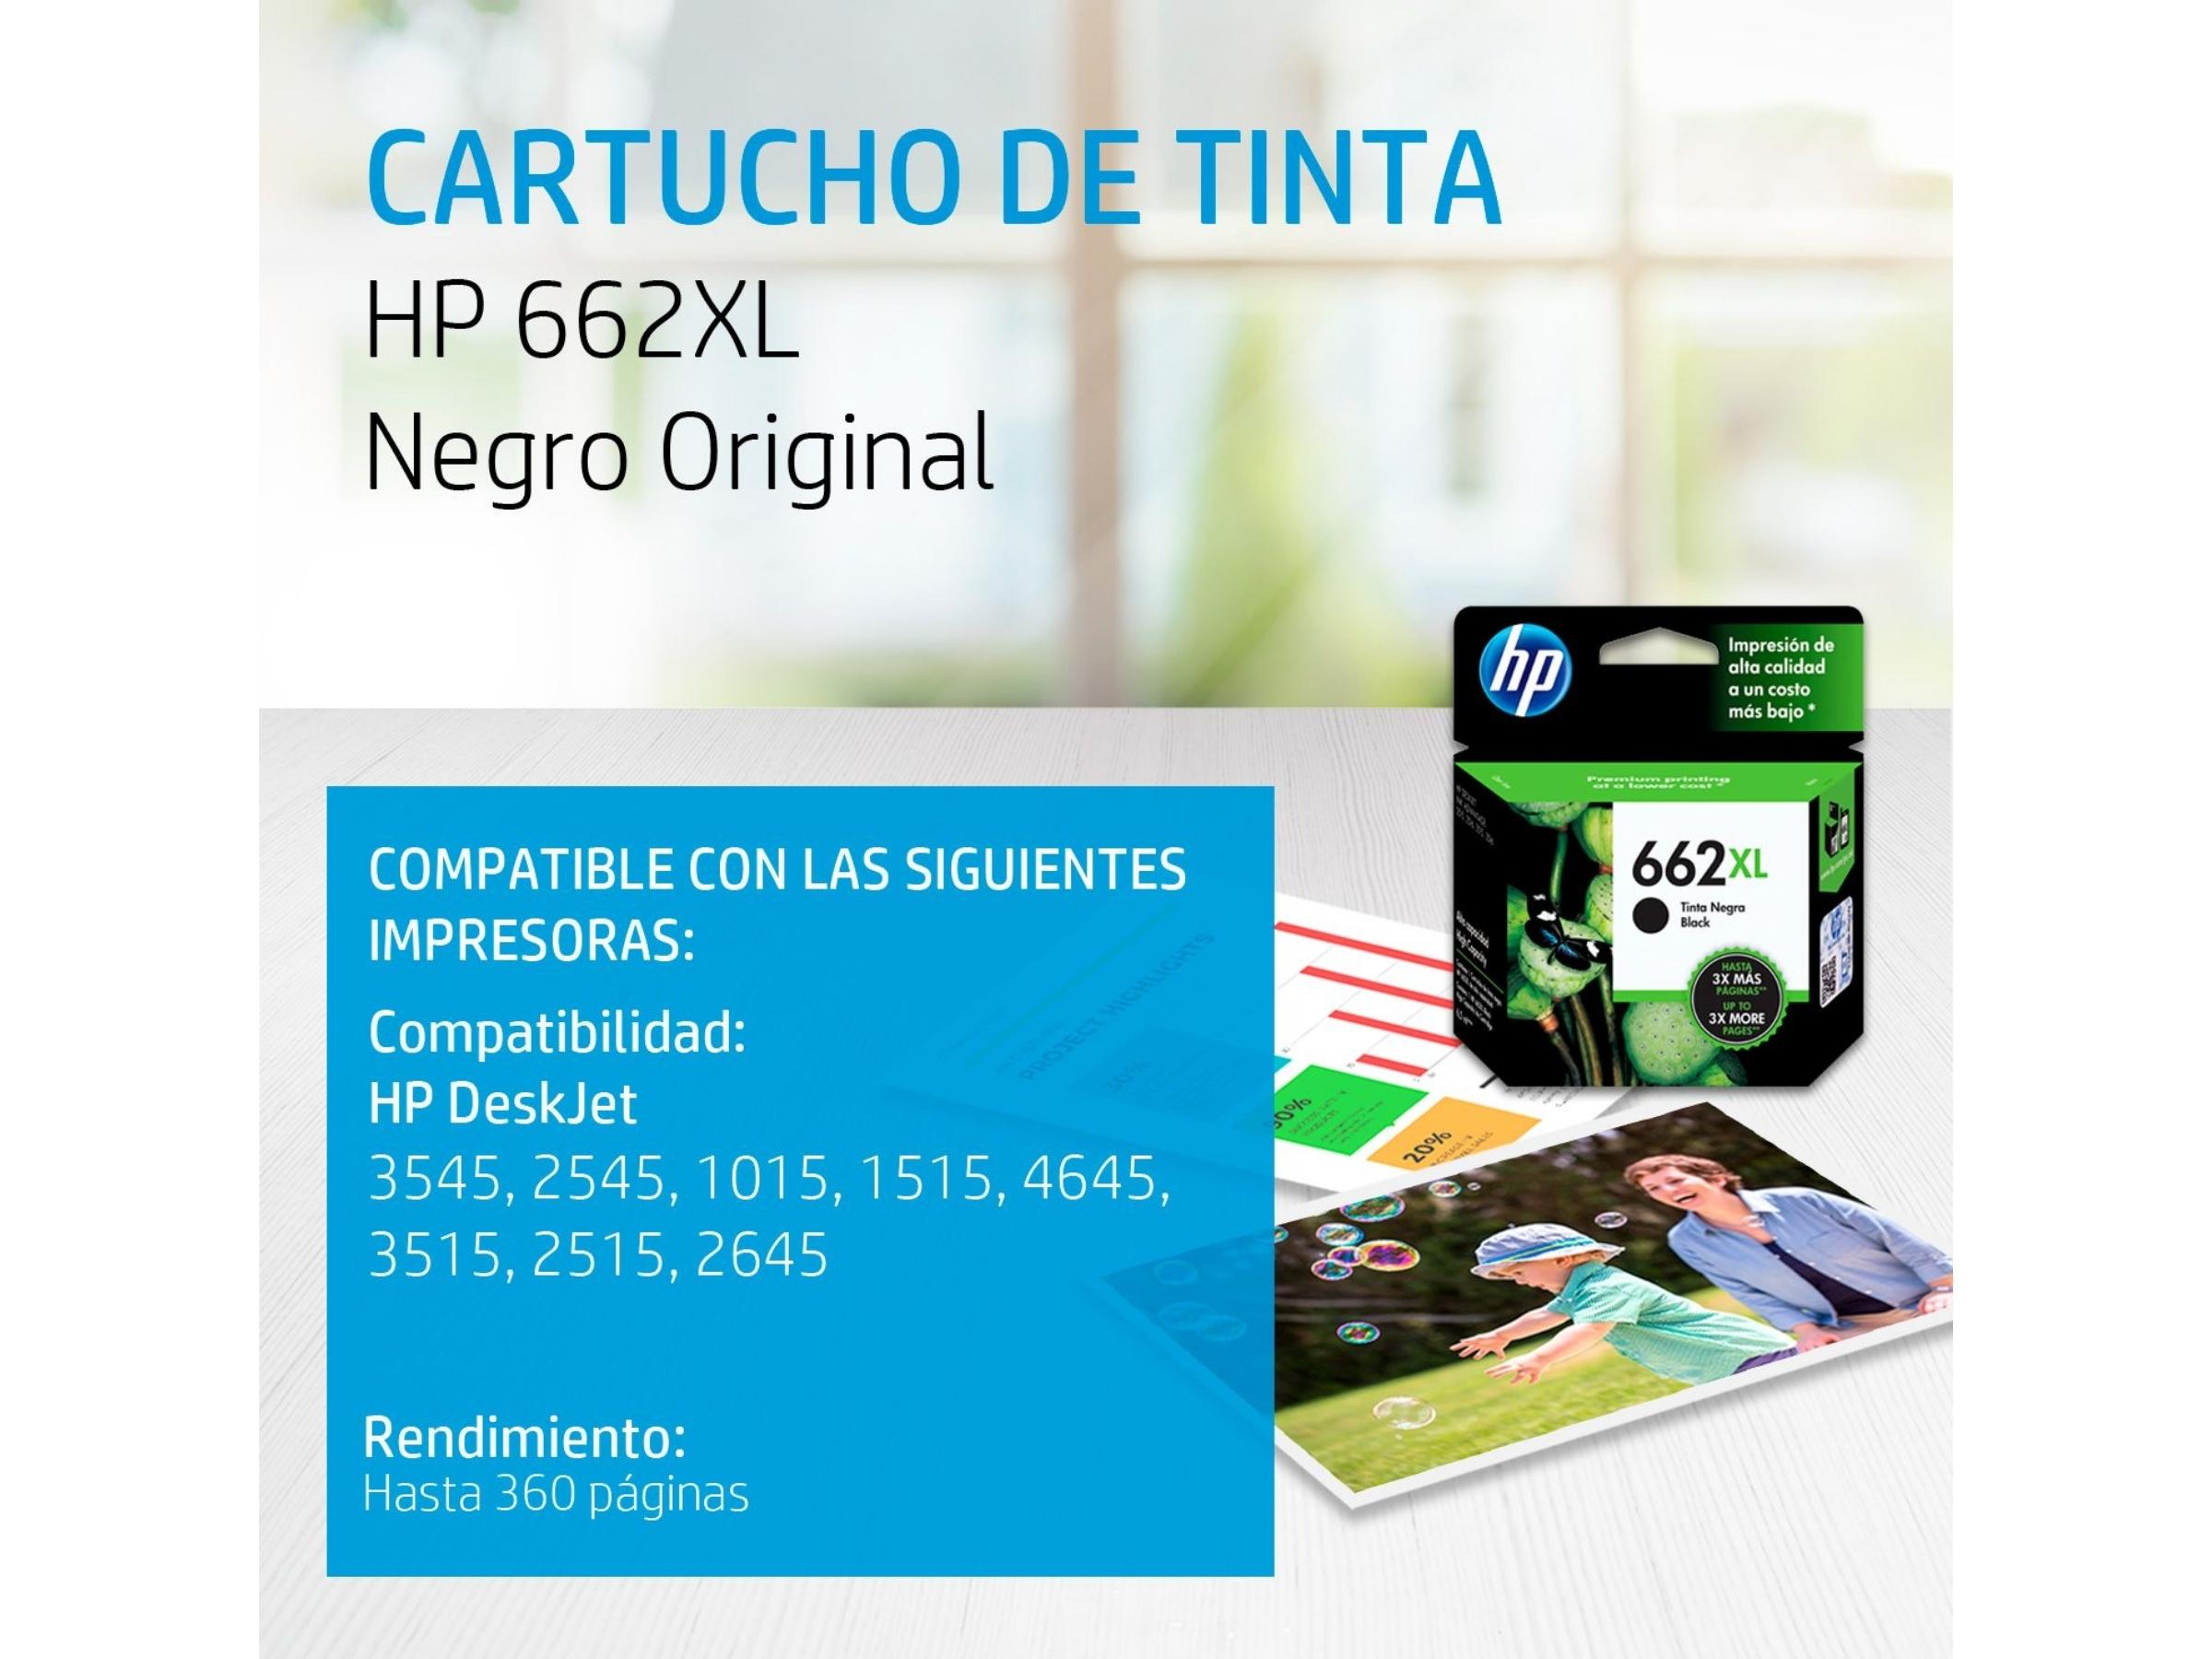 CARTUCHO DE TINTA HP 662XL NEGRO (CZ105AL) 2515/3515